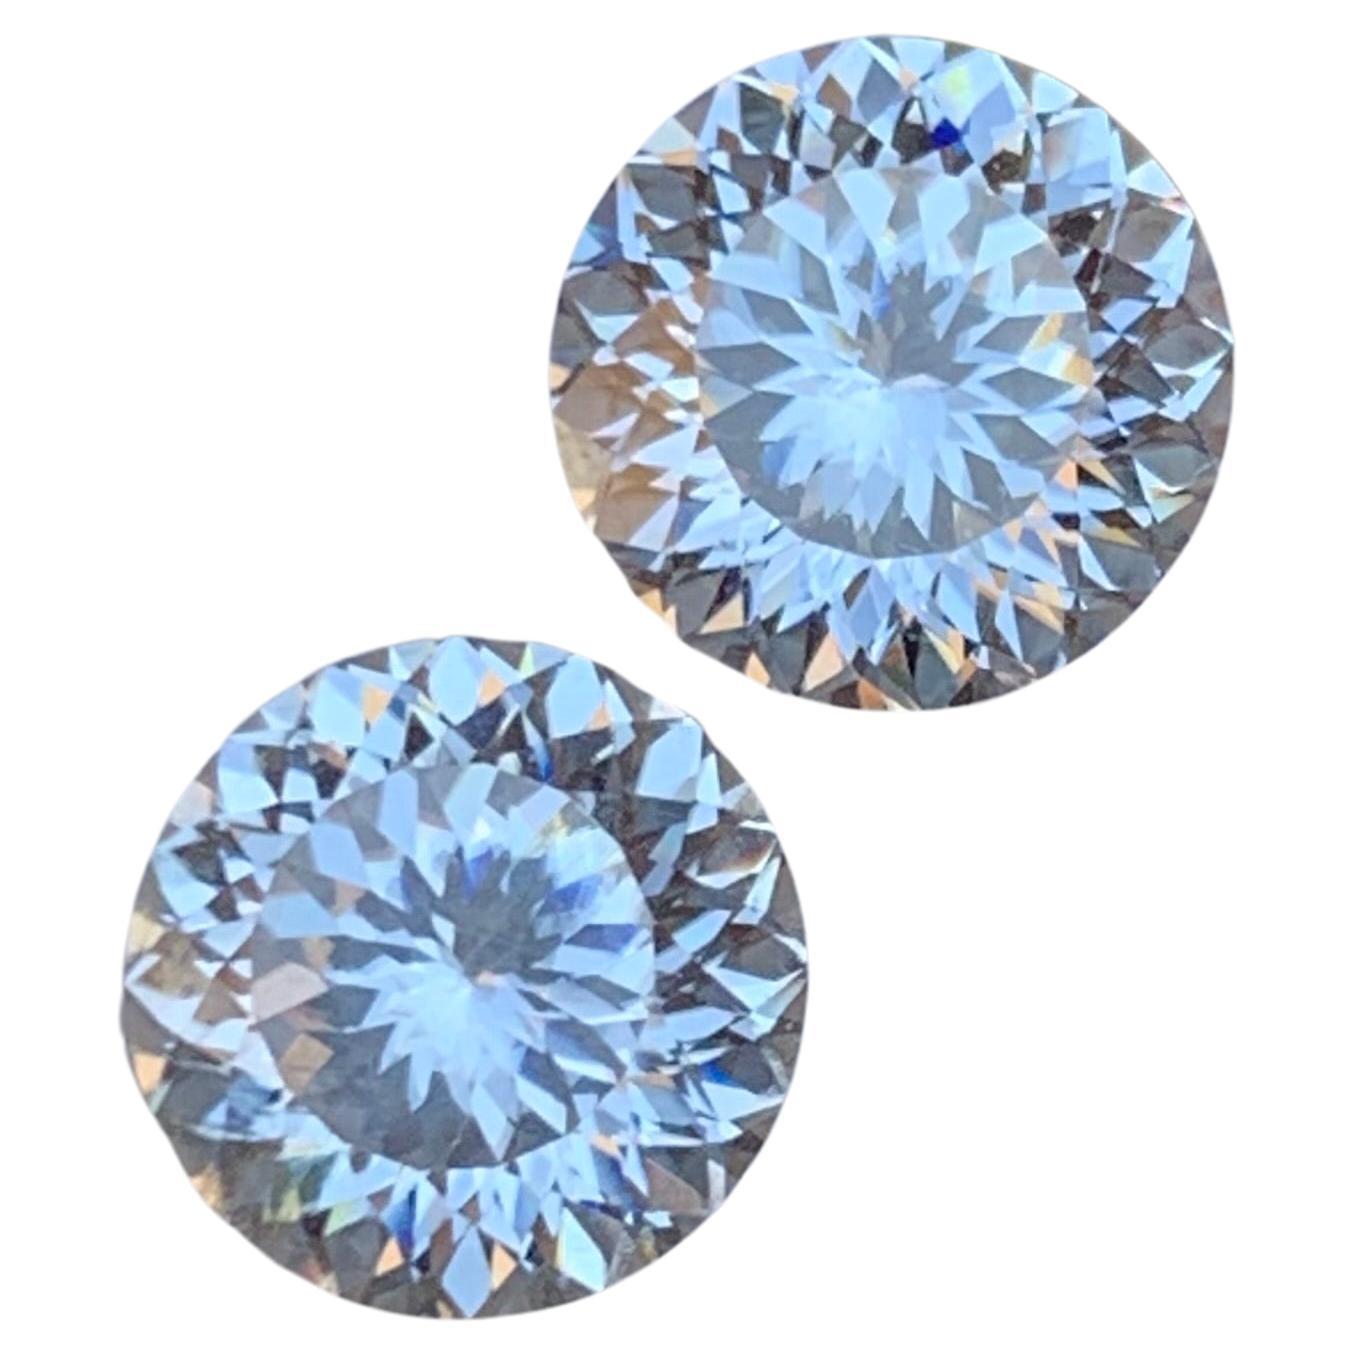 Rare White Moissanite Gemstones, 3.60 Ct Round Brilliant for Earrings or Studs